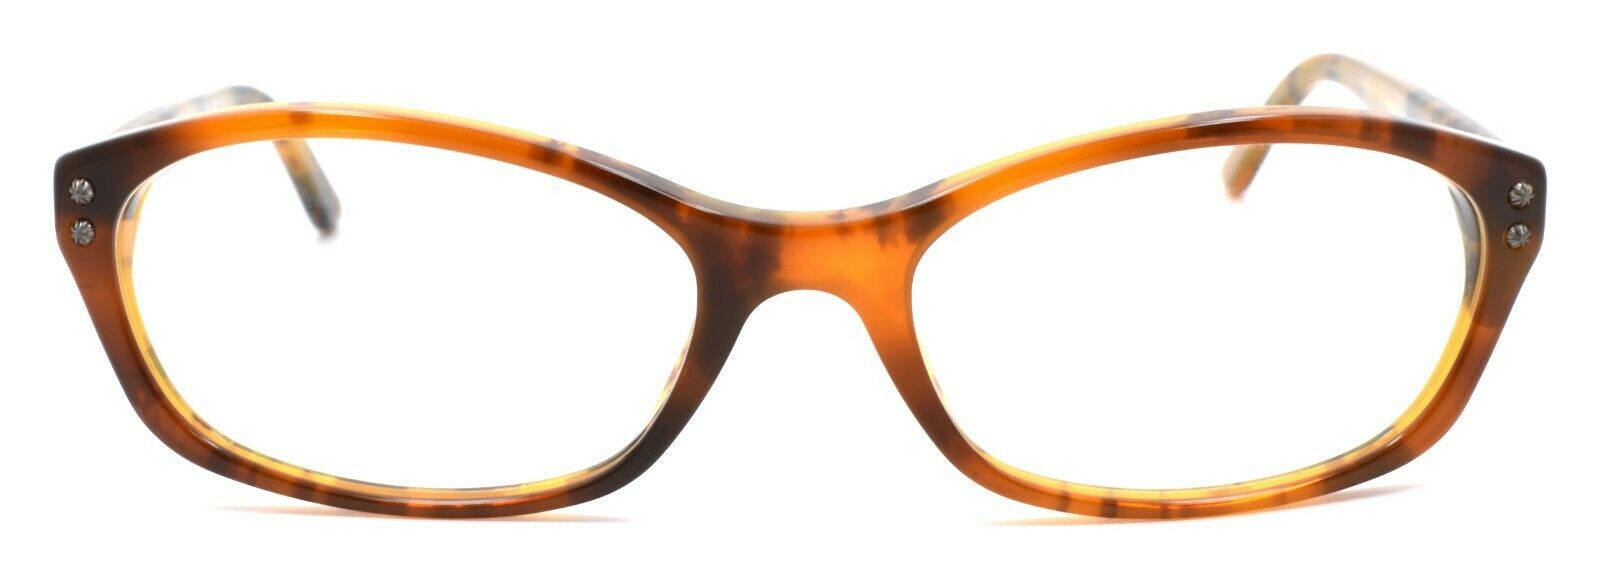 2-Ralph Lauren RL6091 5357 Women's Eyeglasses Frames 51-16-135 Double Tortoise-713132448069-IKSpecs